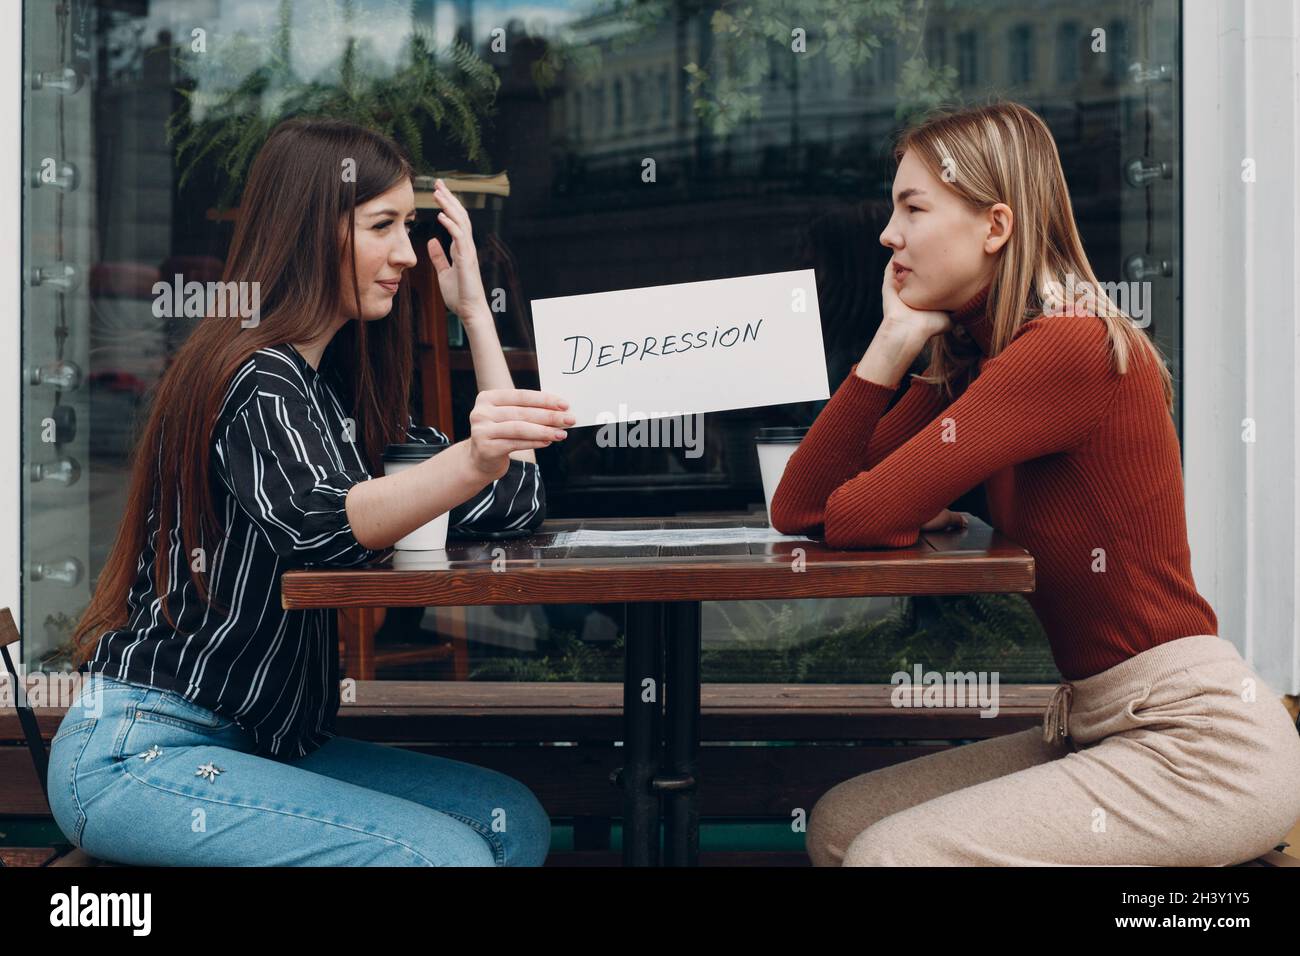 Femme tenant une feuille de papier blanc étiquetée dépression mot dans la main. Deux femmes parlent dans un café de rue. Concept de dépression cachée Banque D'Images